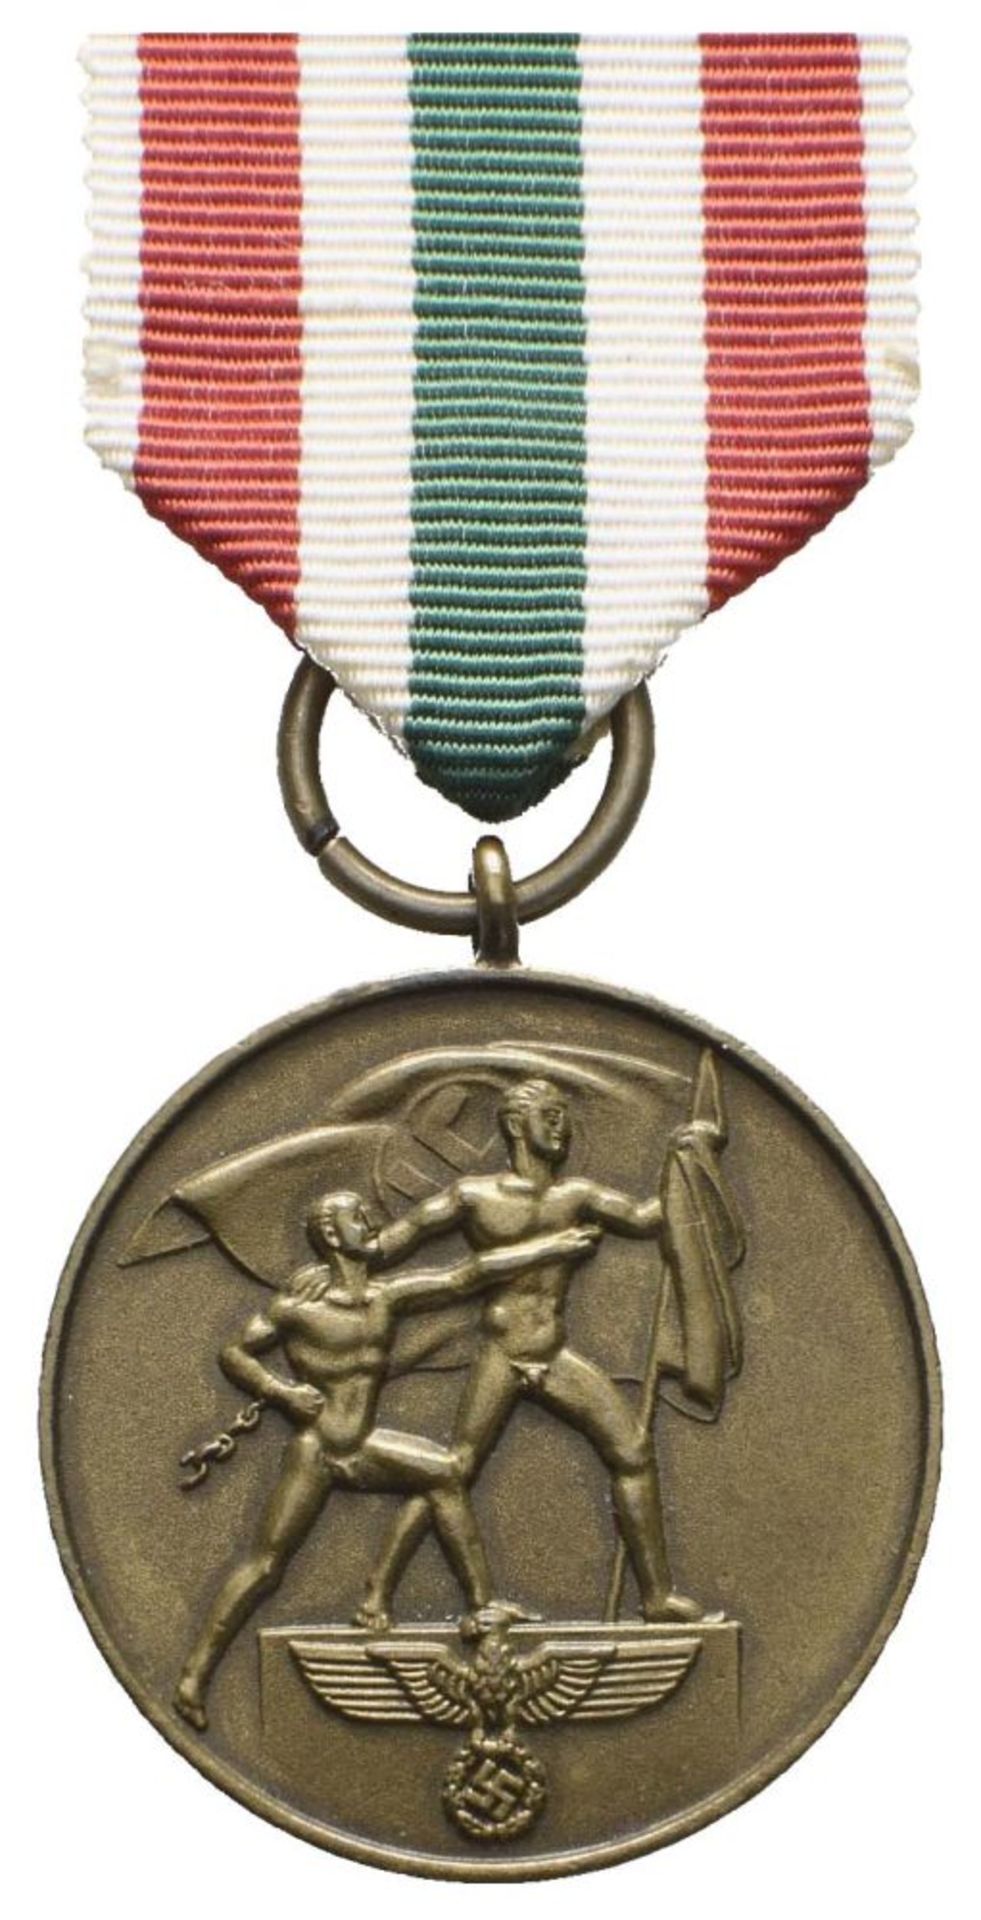 Medaille zur Erinnerung an die Heimkehr des Memellandes (1939-1940), am Band, broschiert, OEK